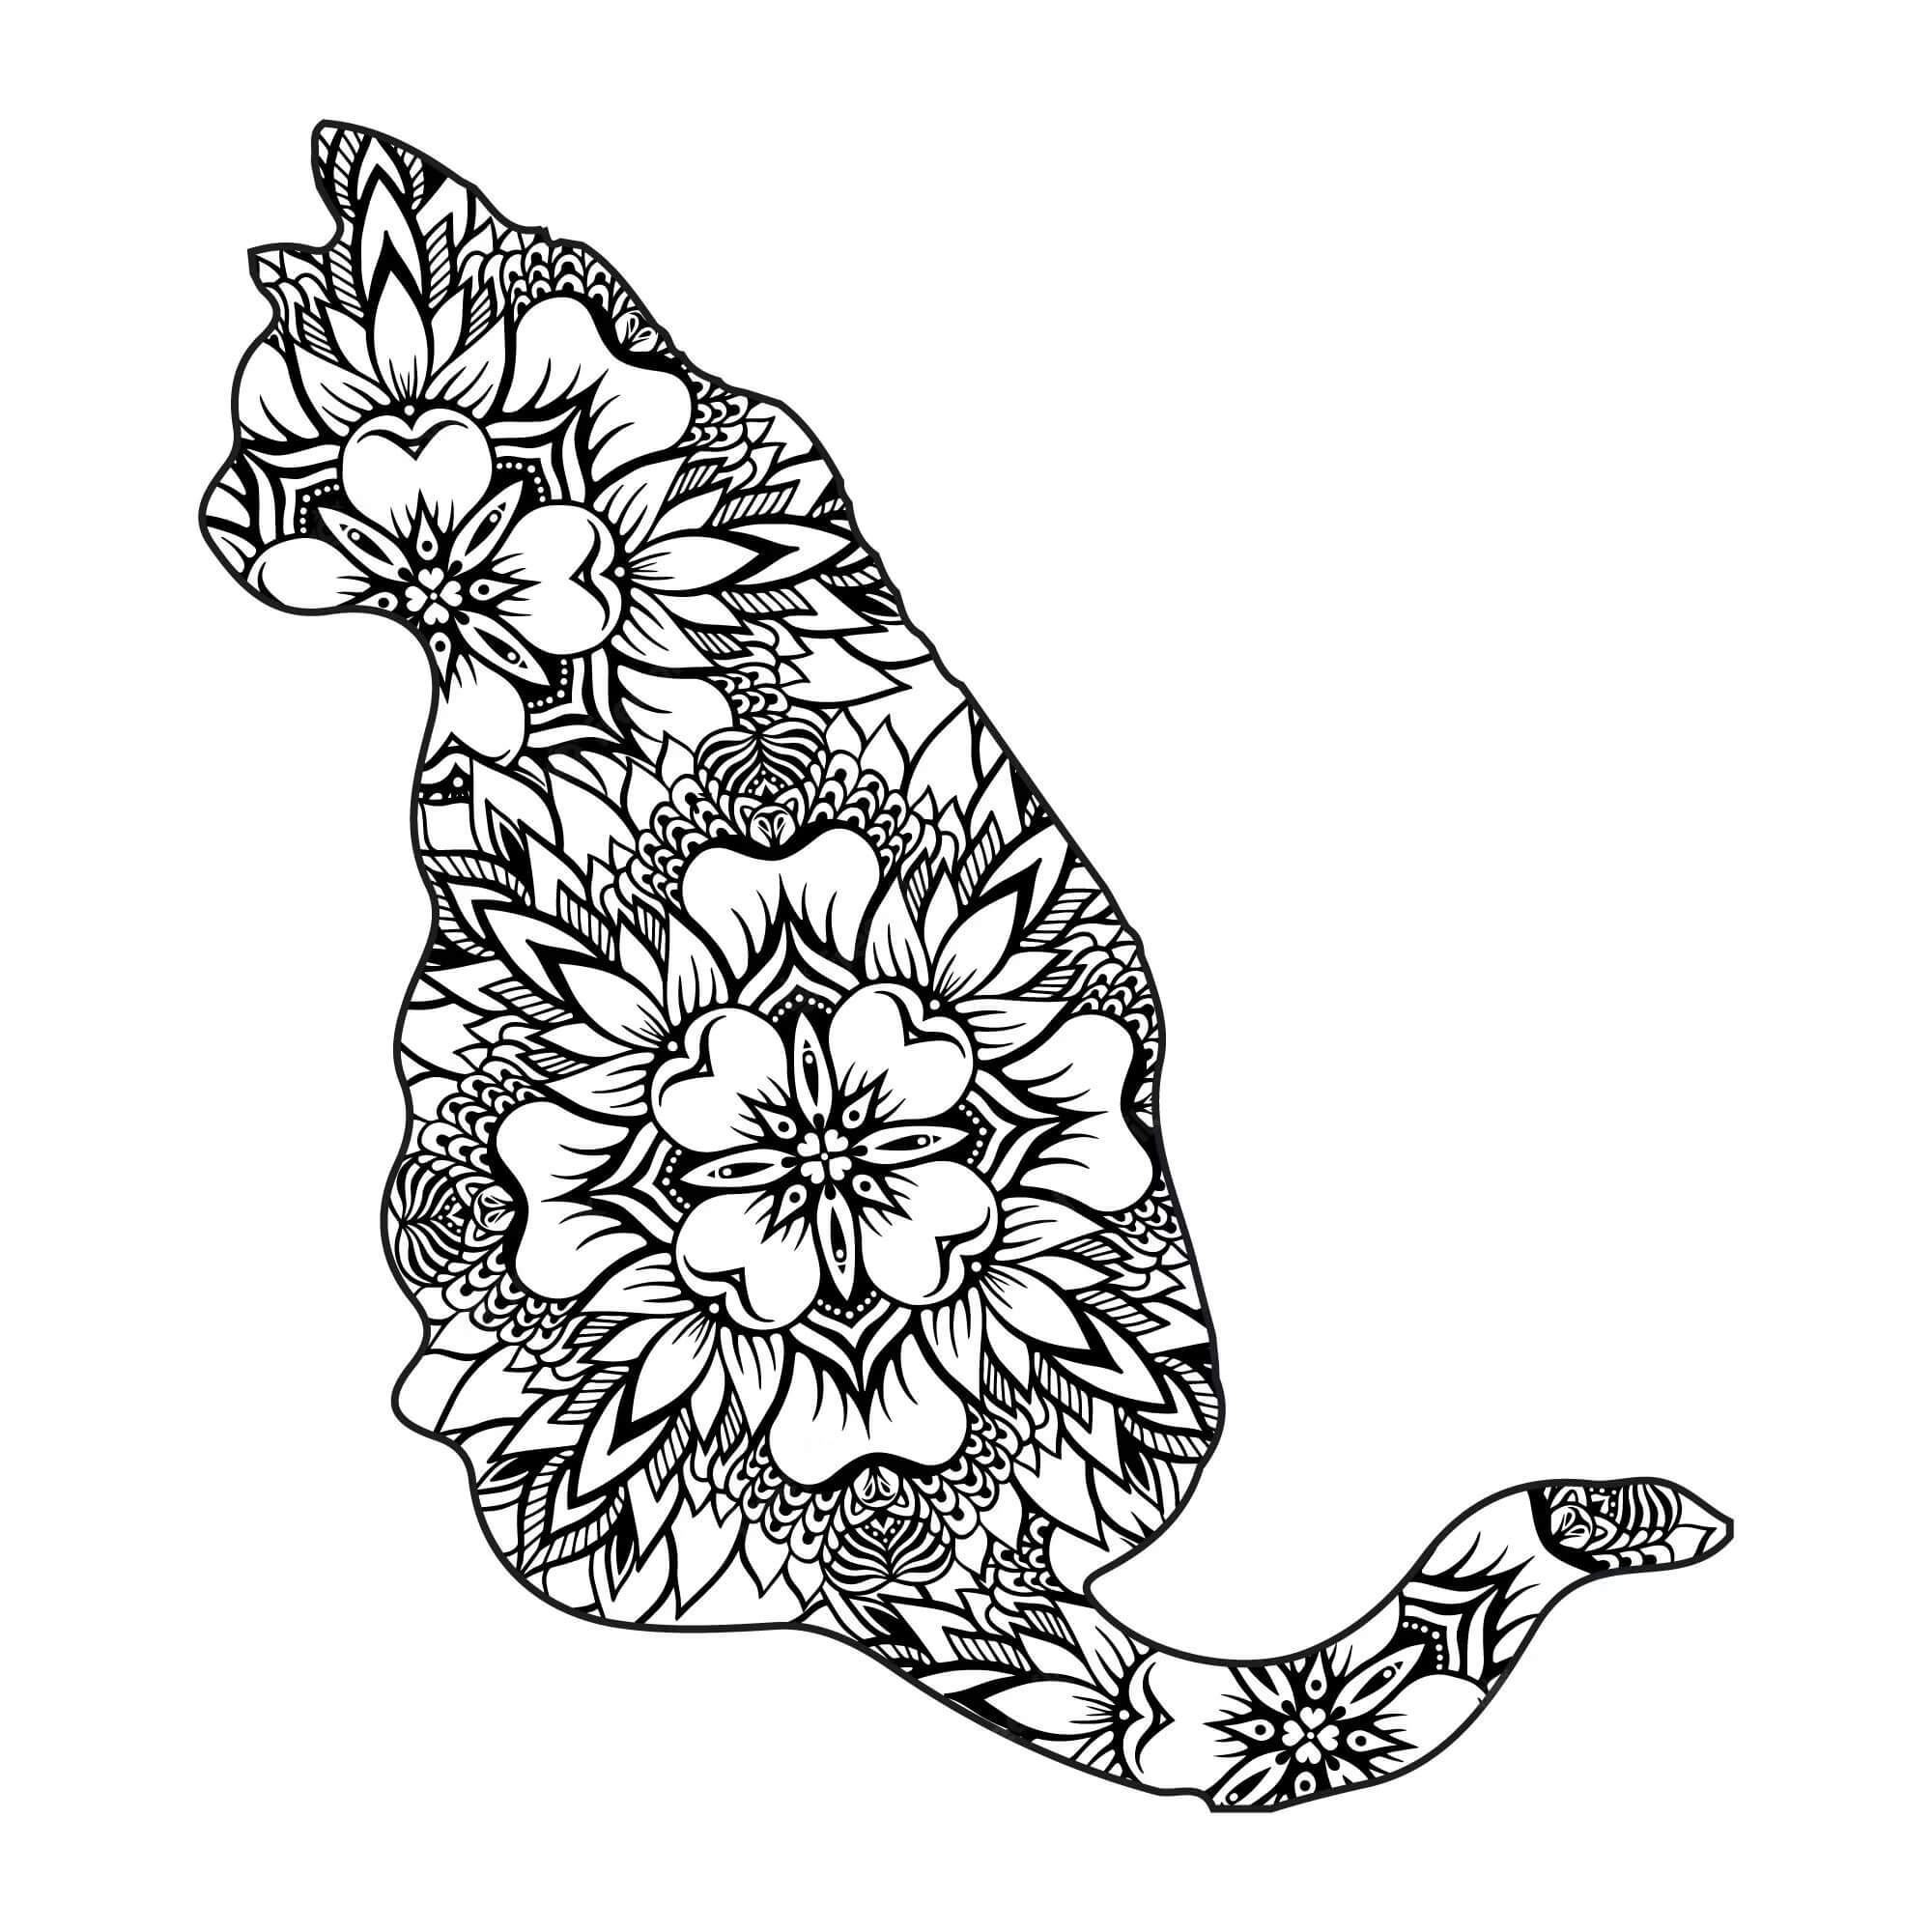 Mandala Cat Coloring Page – Sheet 11 Mandalas